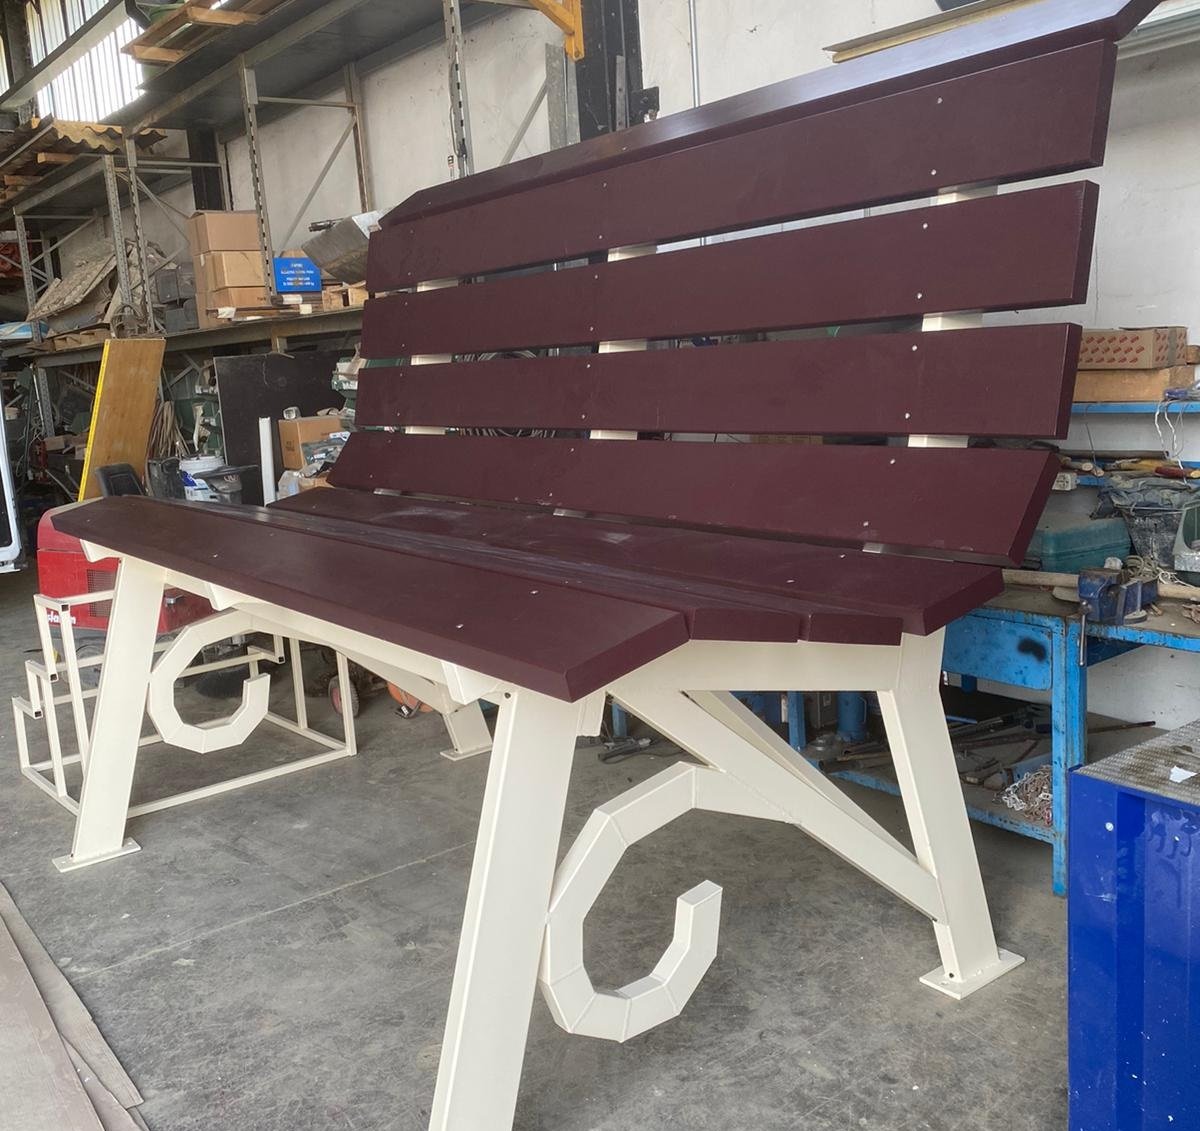 Anche Fubine avrà la sua ‘big bench’, una panchina gigante donata da un’azienda del territorio